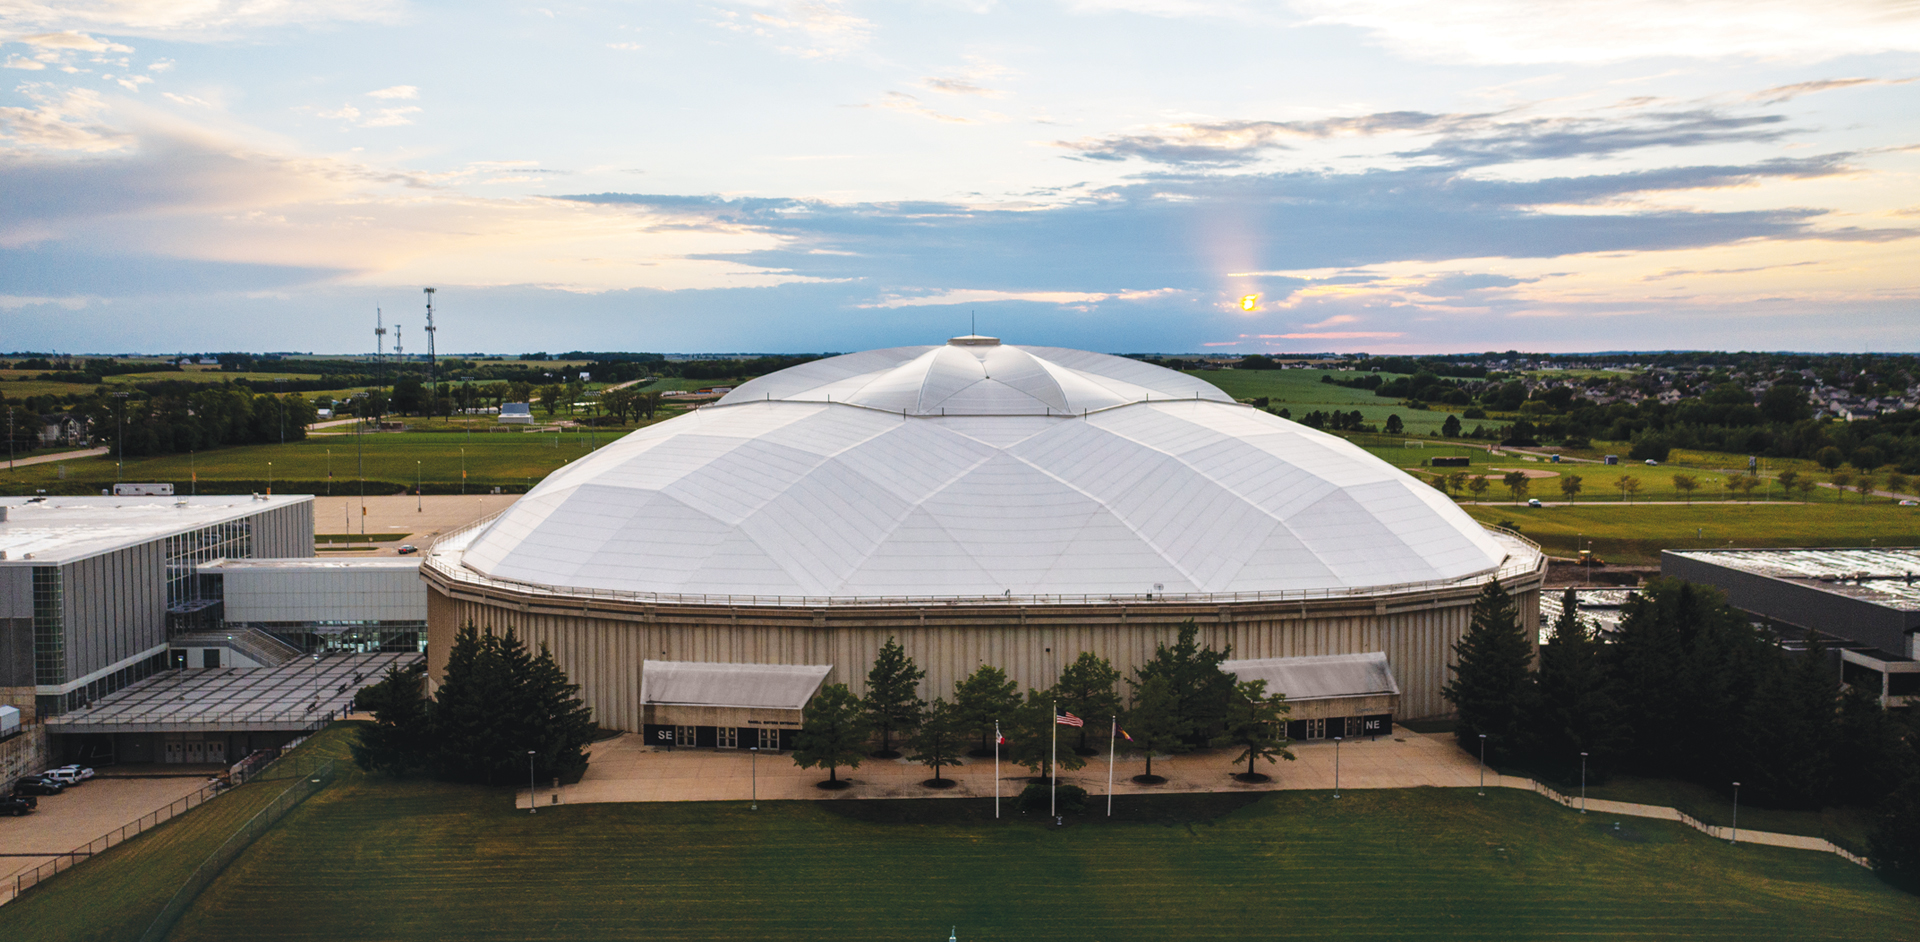 The UNI-Dome